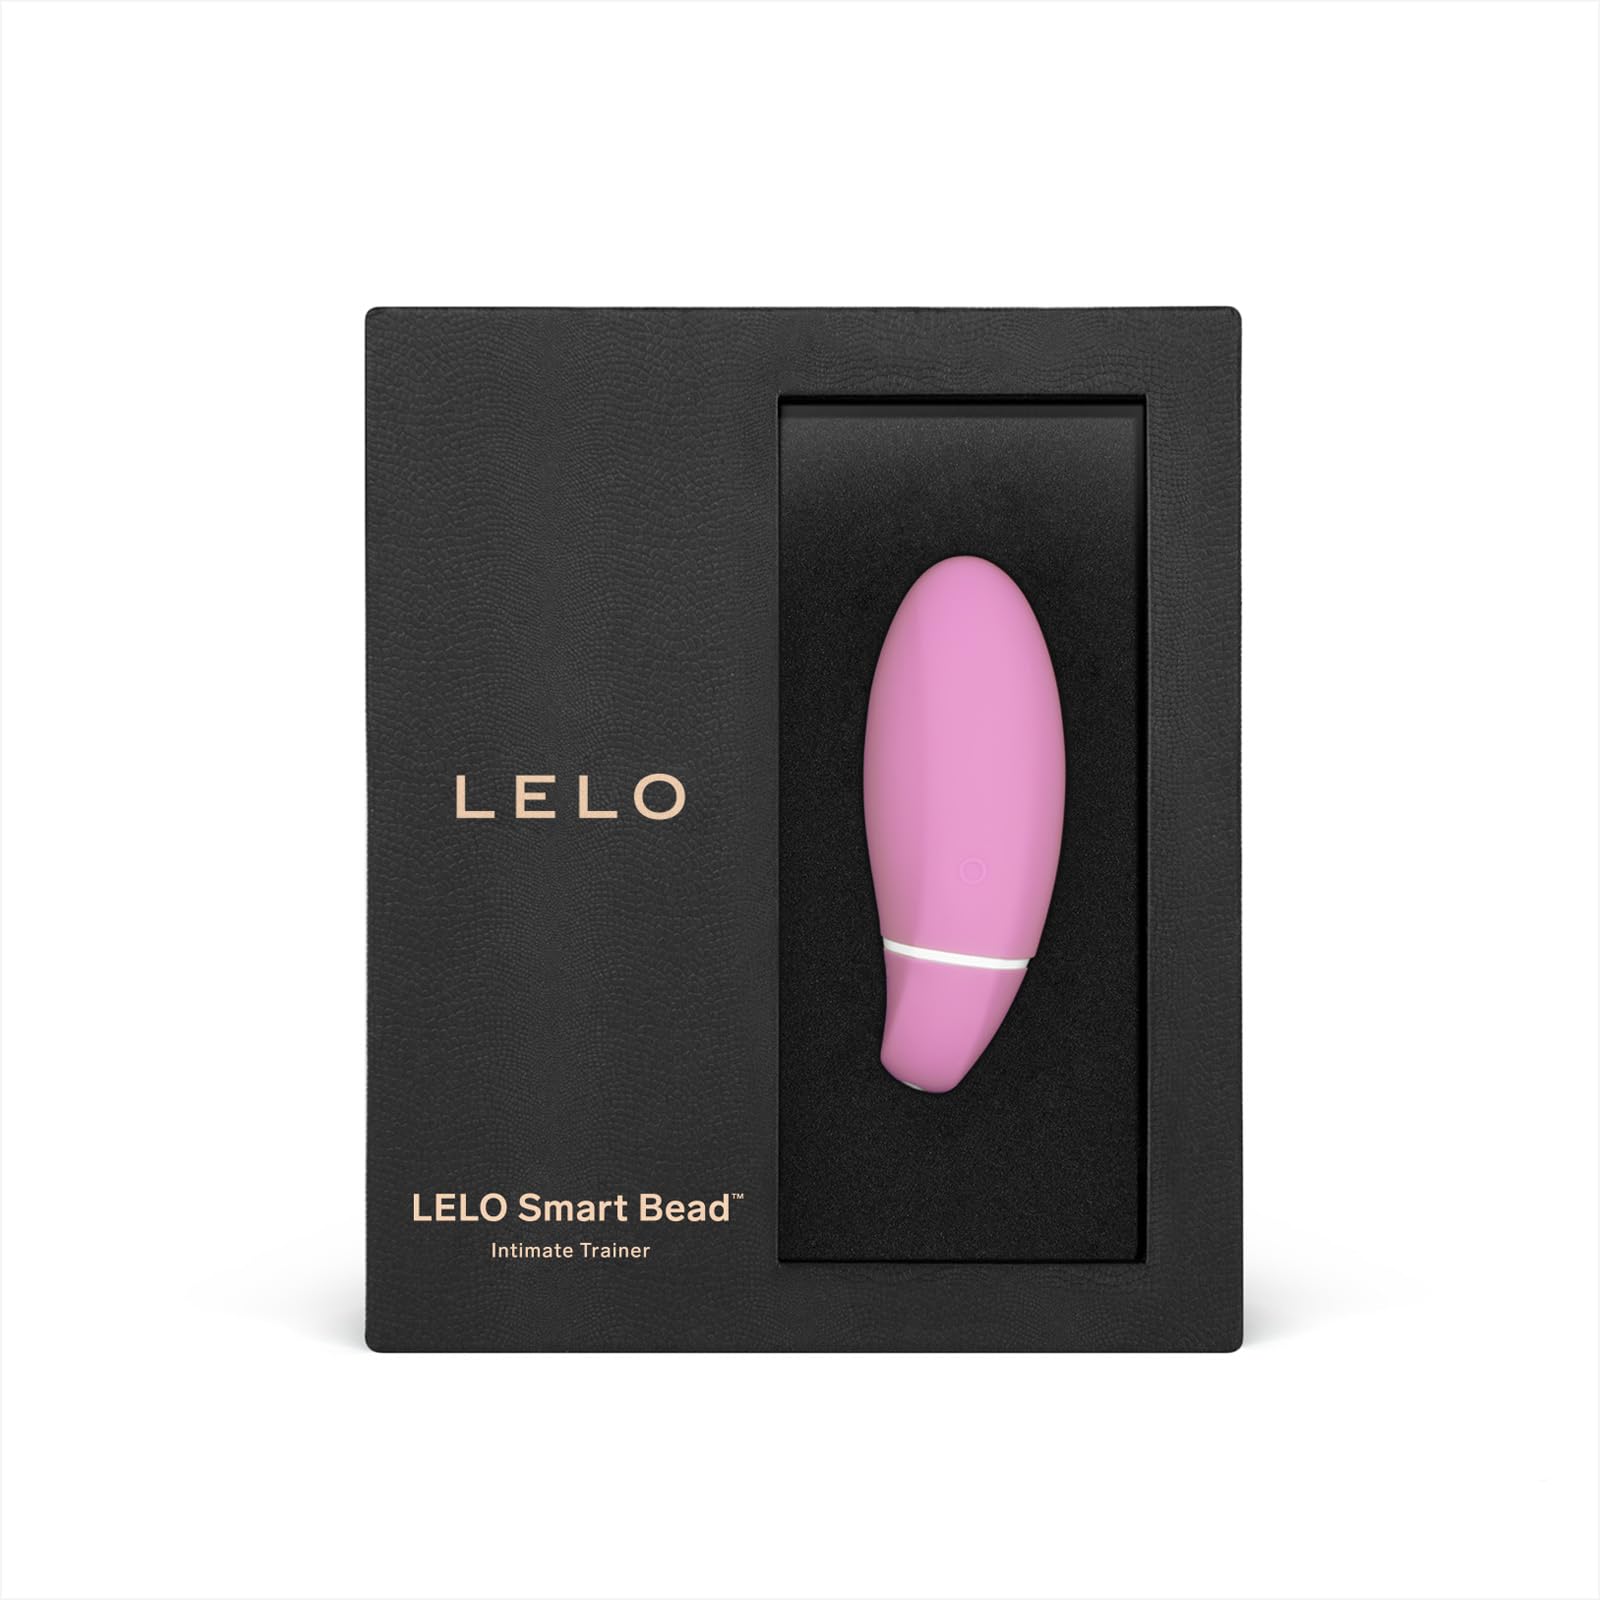 LELO Smart Bead Beckenbodentrainer, Liebeskugeln Sexspielzeug, Touch Sensor Beckenbodentrainer für Frauen - weibliche Liebeskugeln mit Vibrationen und 1 Jahr Garantie, Pink